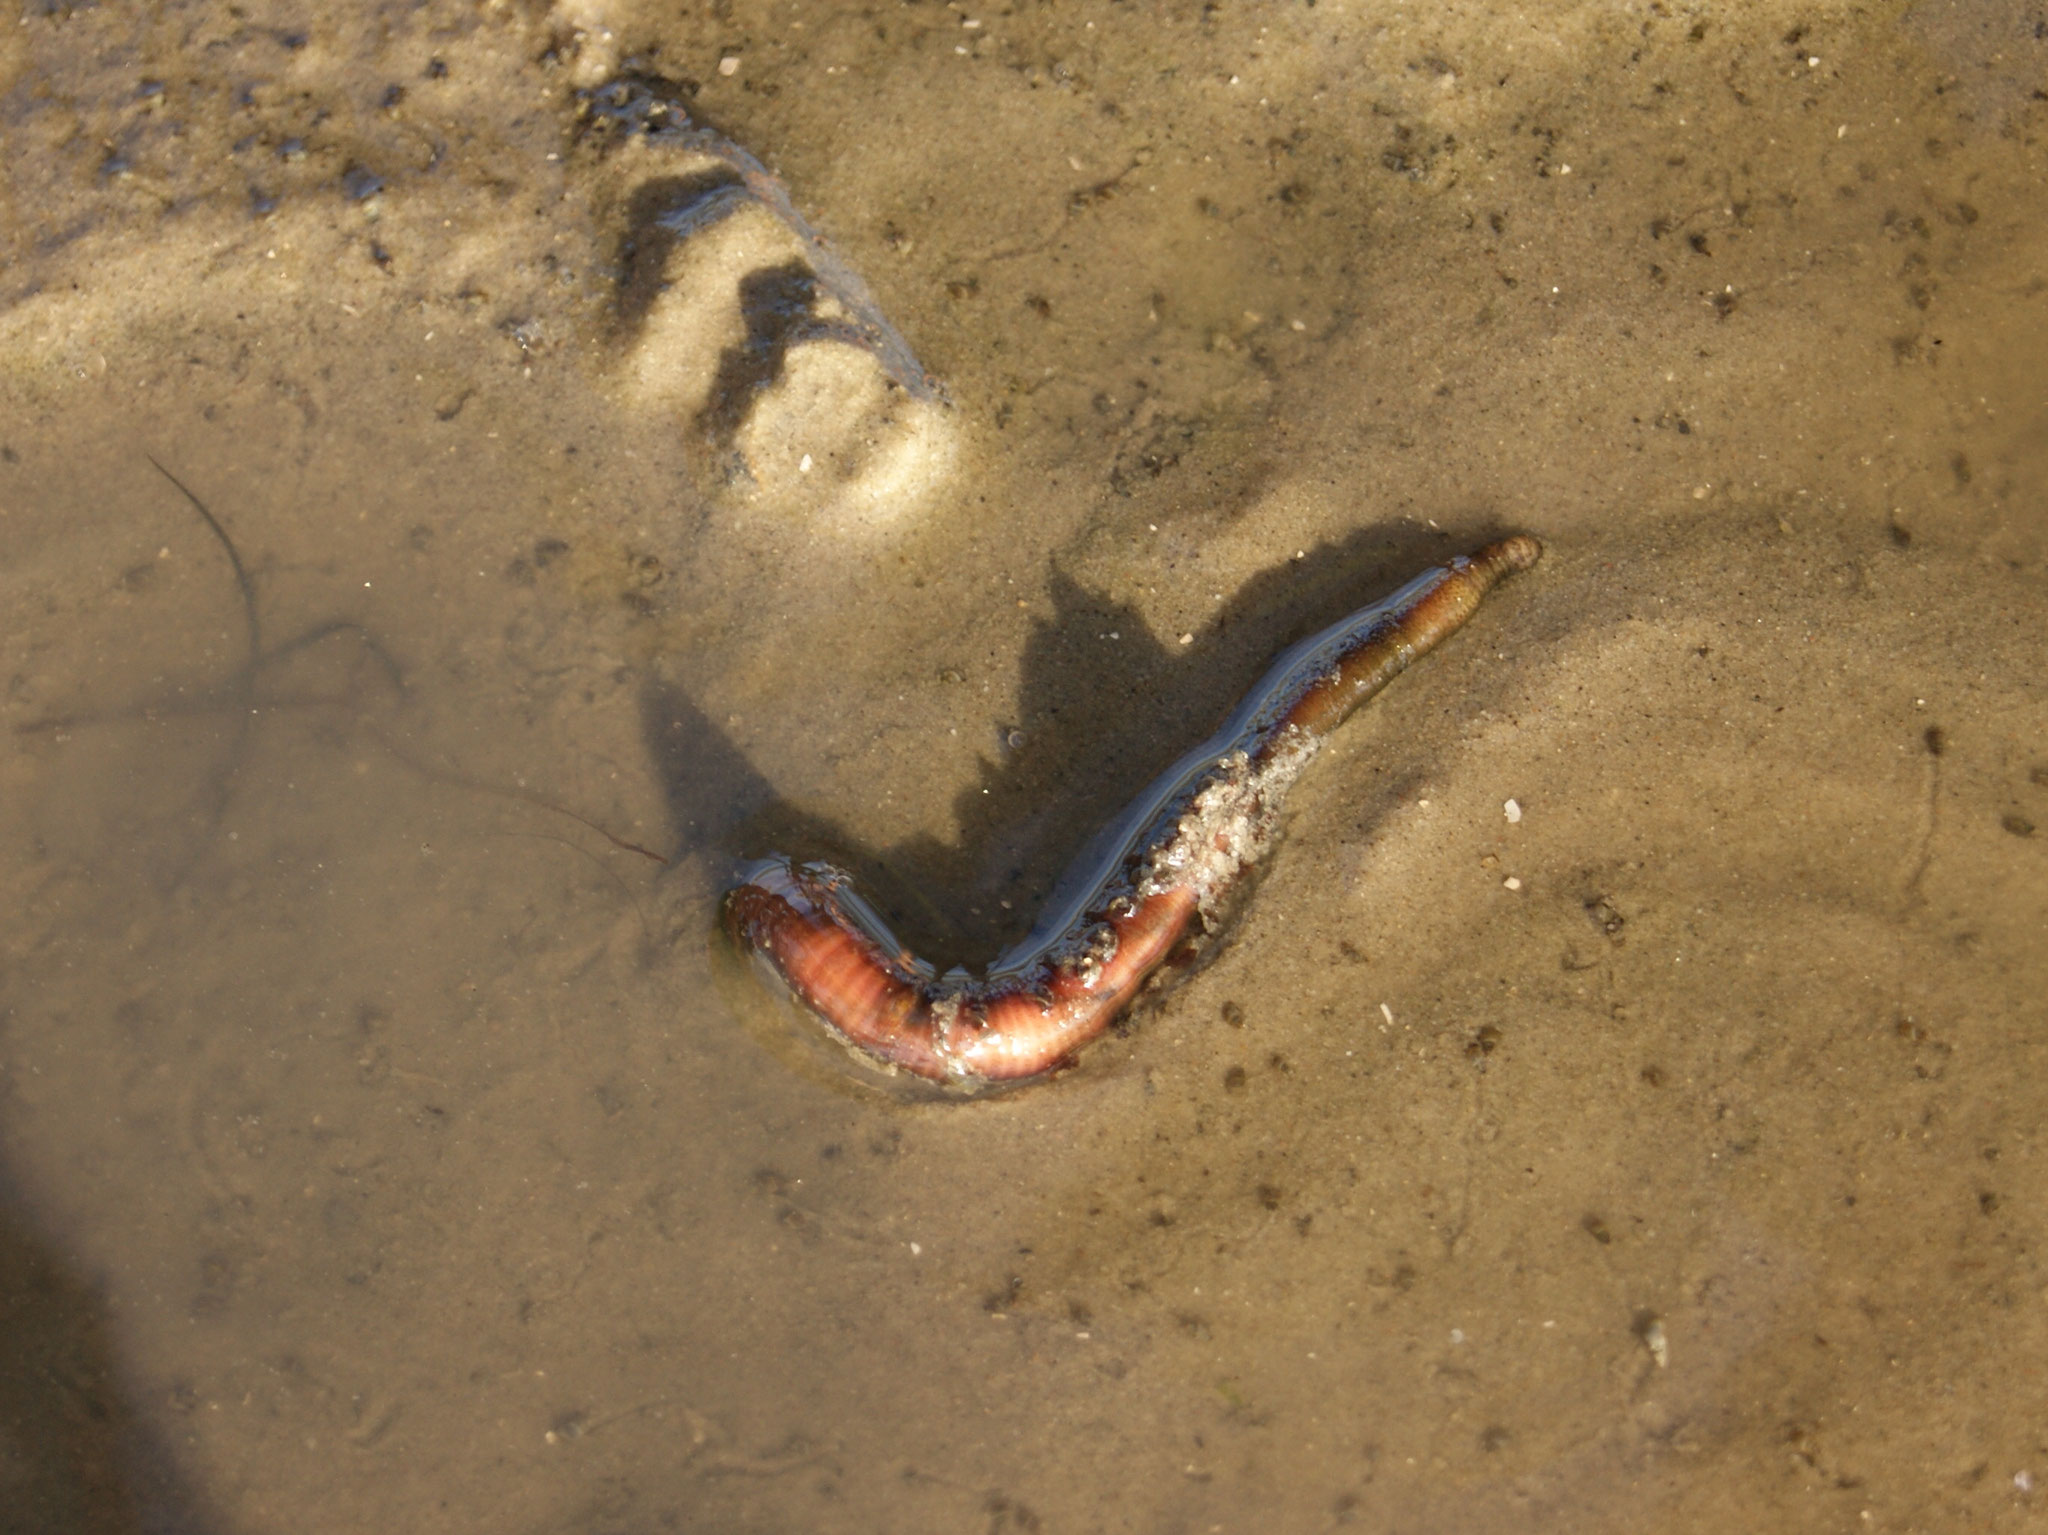 Der Wattwurm will zurück in seine U-förmige Röhre, sonst wird er Nahrung für die Vögel